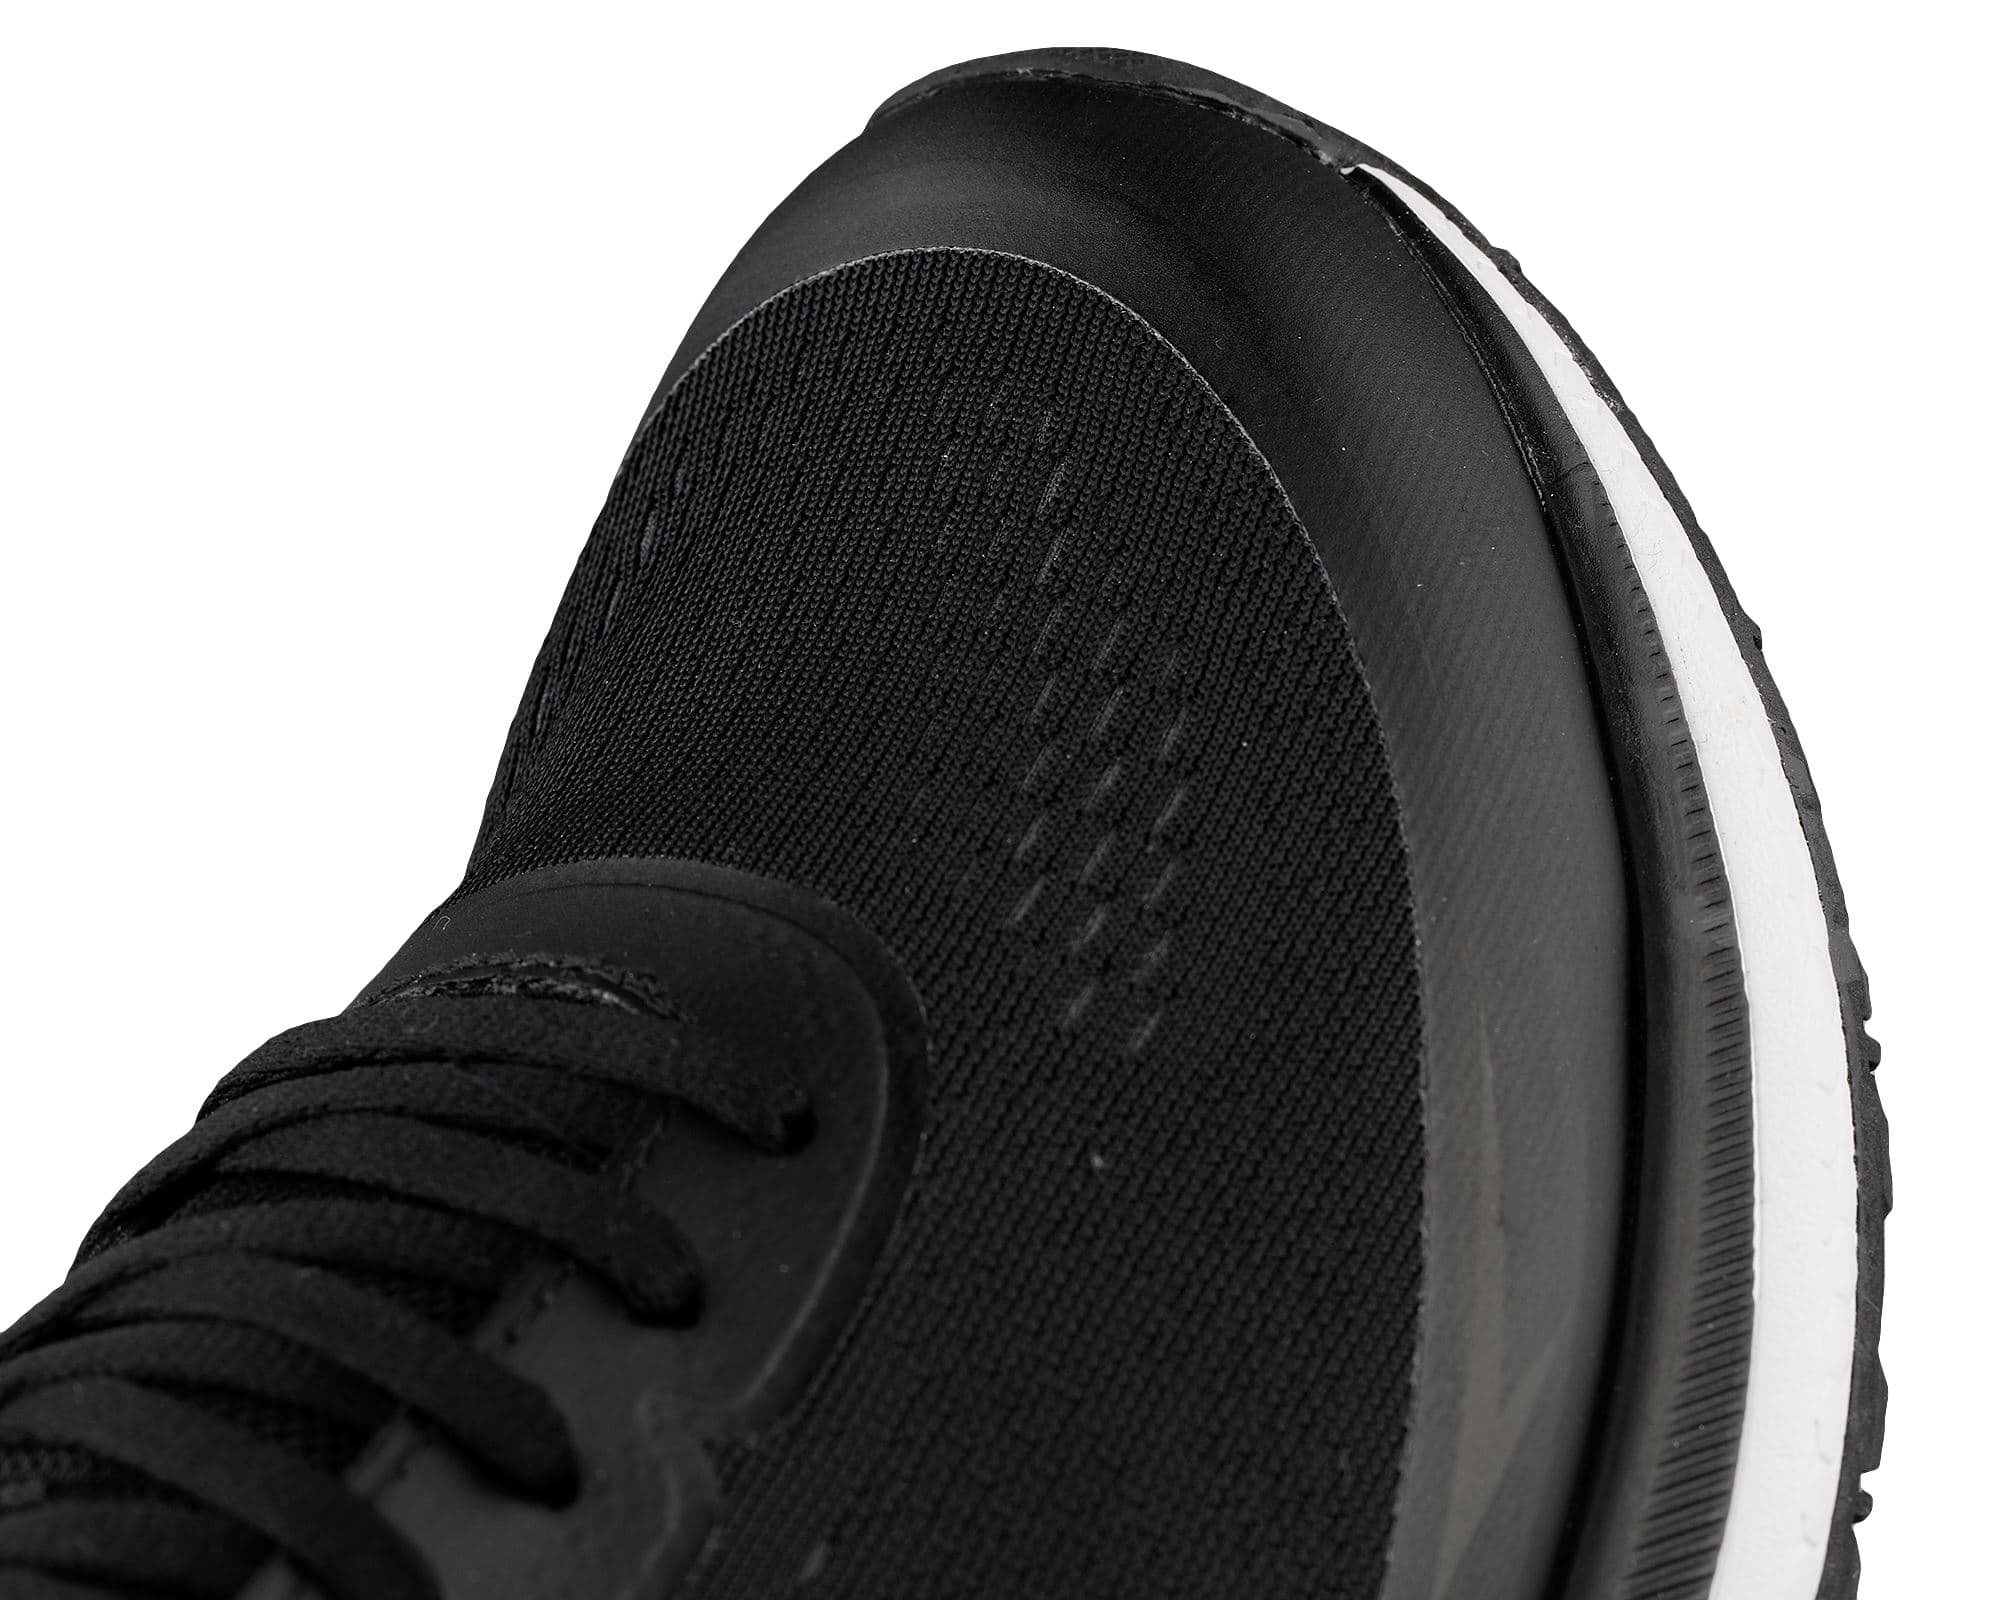 Cesar Erkek Siyah Koşu Ayakkabısı (100601849)